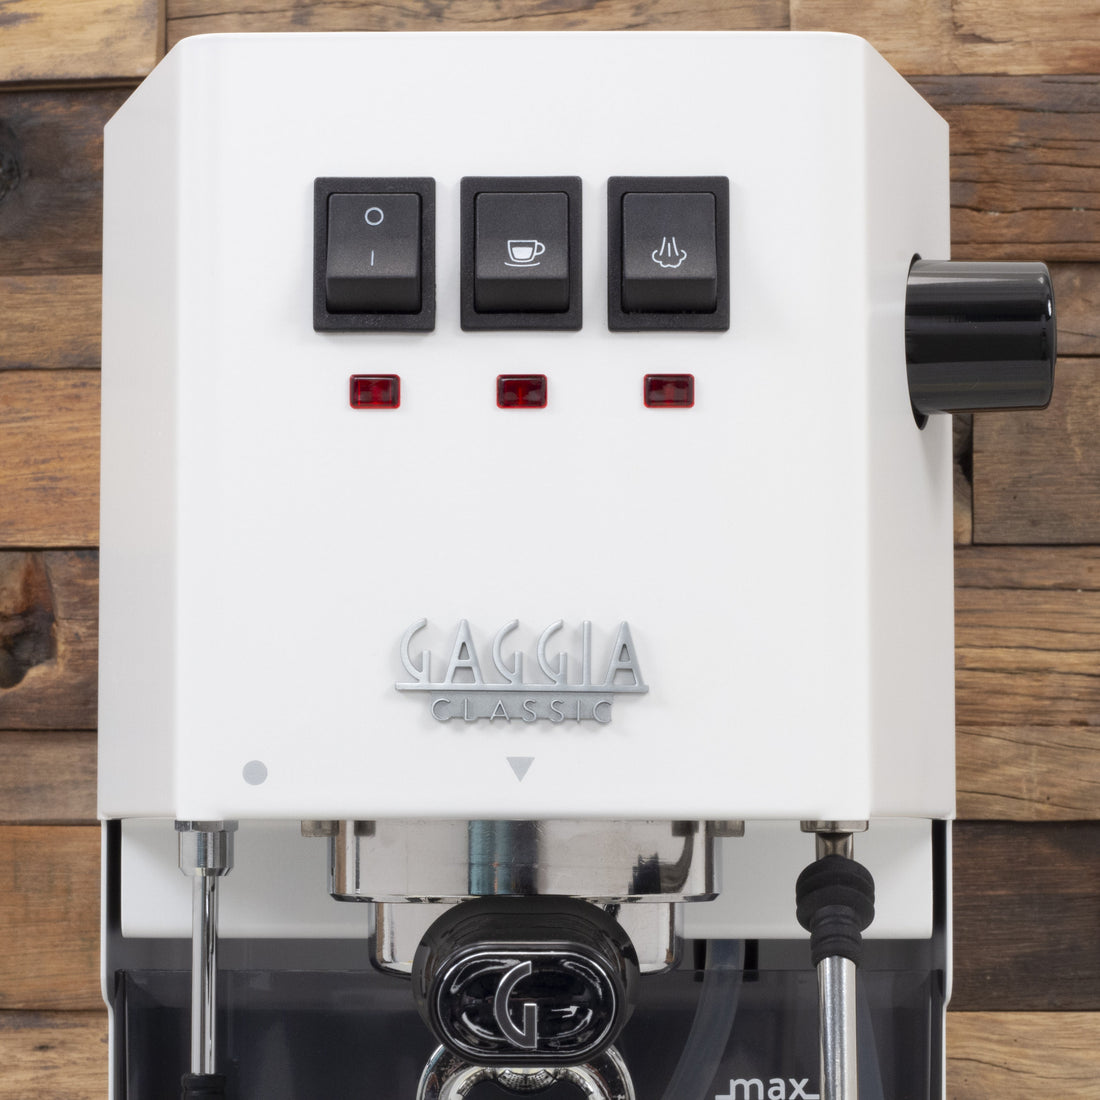 Gaggia Classic Evo Pro Espresso Machine in Polar White with Tiger Maple